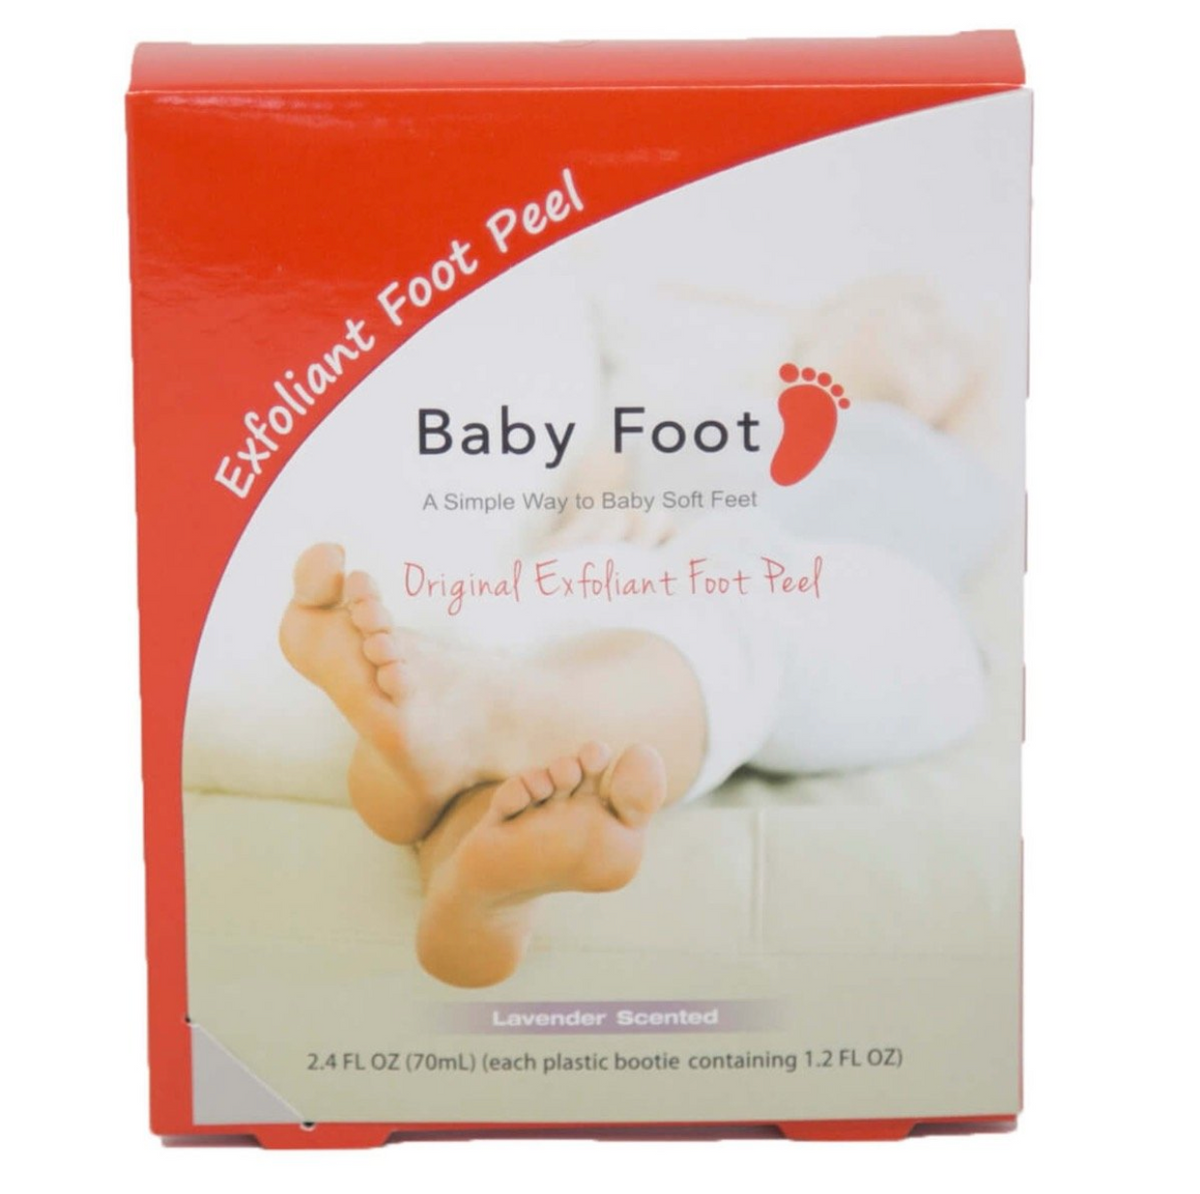 Baby Foot- Foot Peel